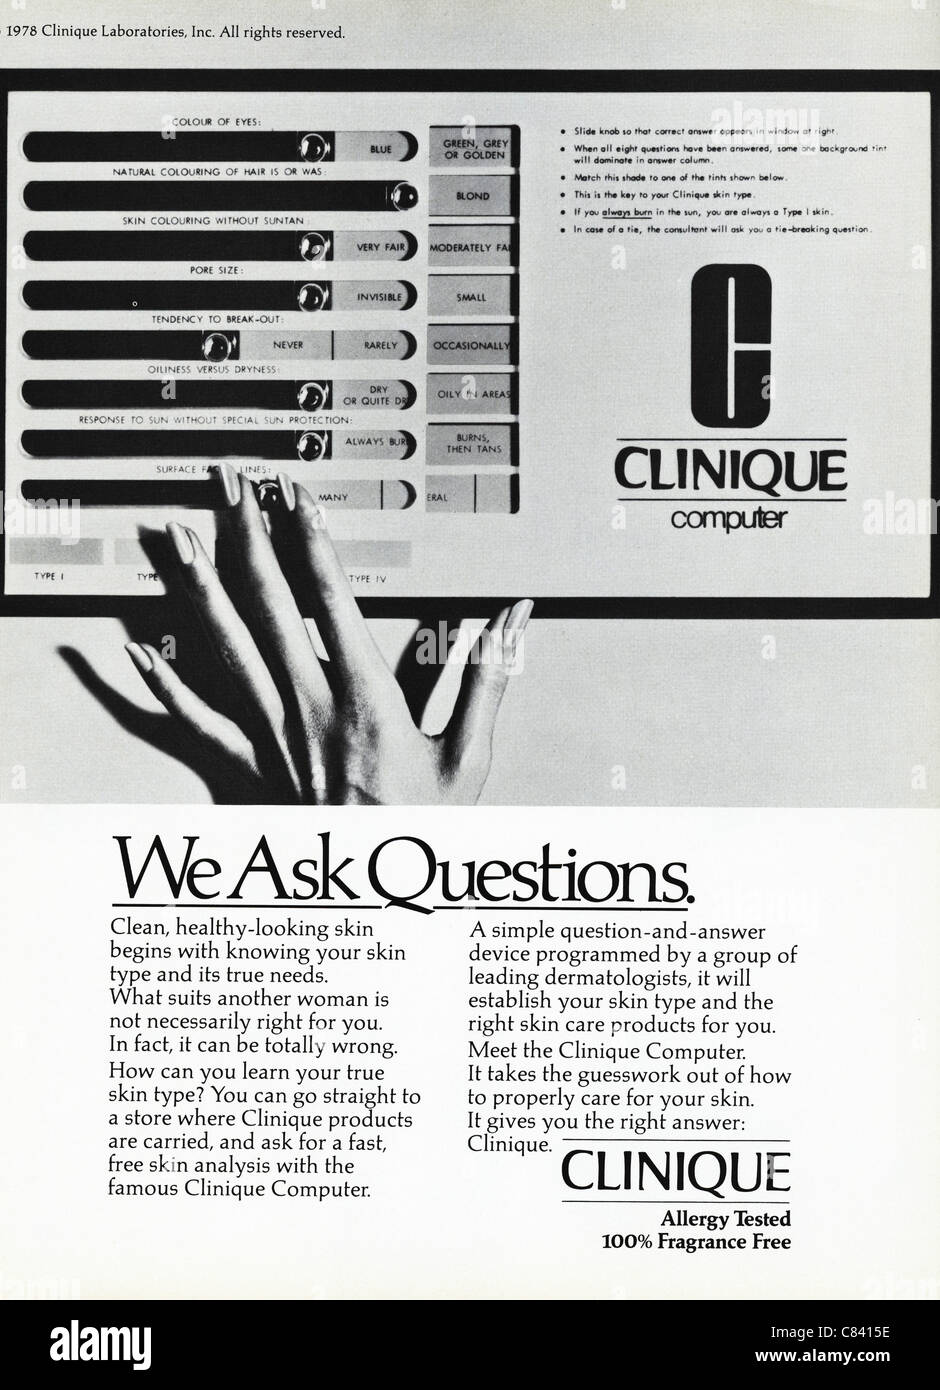 Pagina piena annuncio rivista circa 1984 pubblicità CLINIQUE cosmetici prodotti di pelle Foto Stock